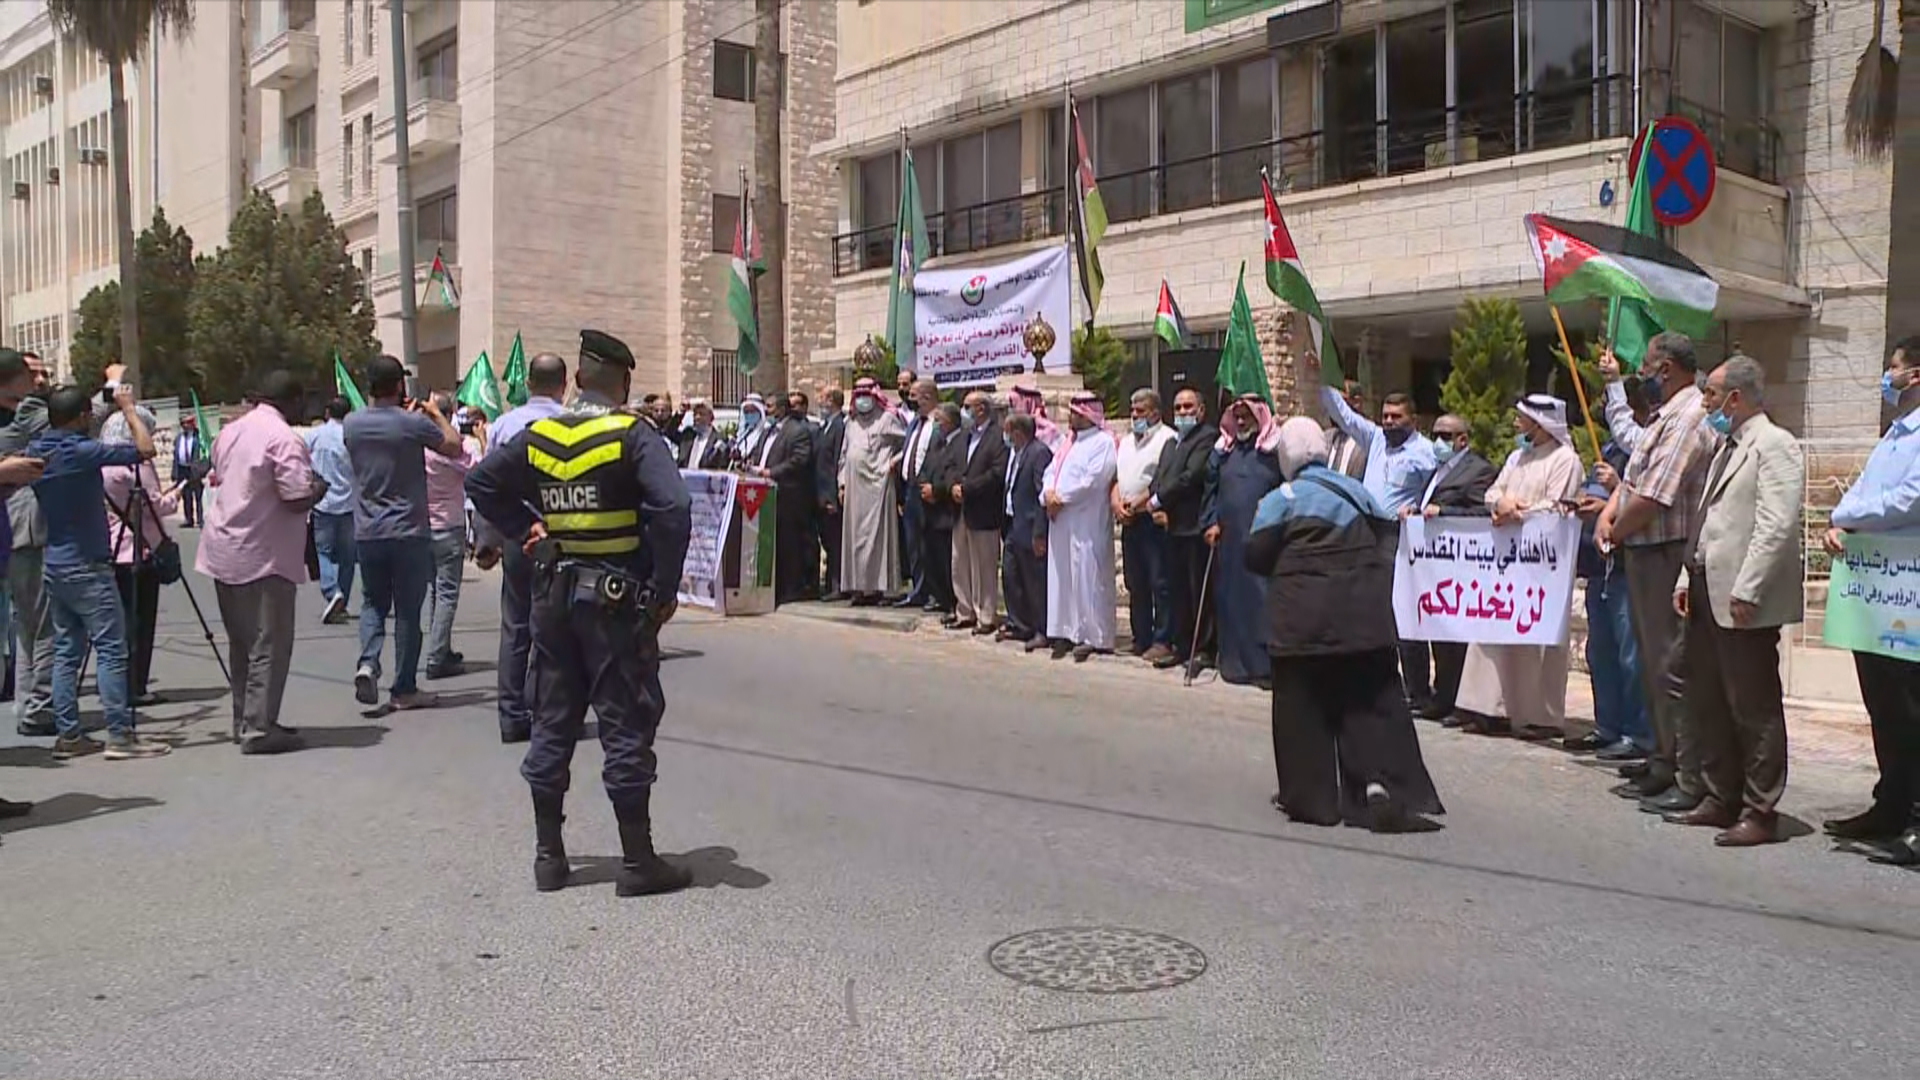 وقفة احتجاجية في مجمع النقابات المهنية في إربد تنديدا بالاعتداءات الإسرائيلية على القدس. (المملكة)